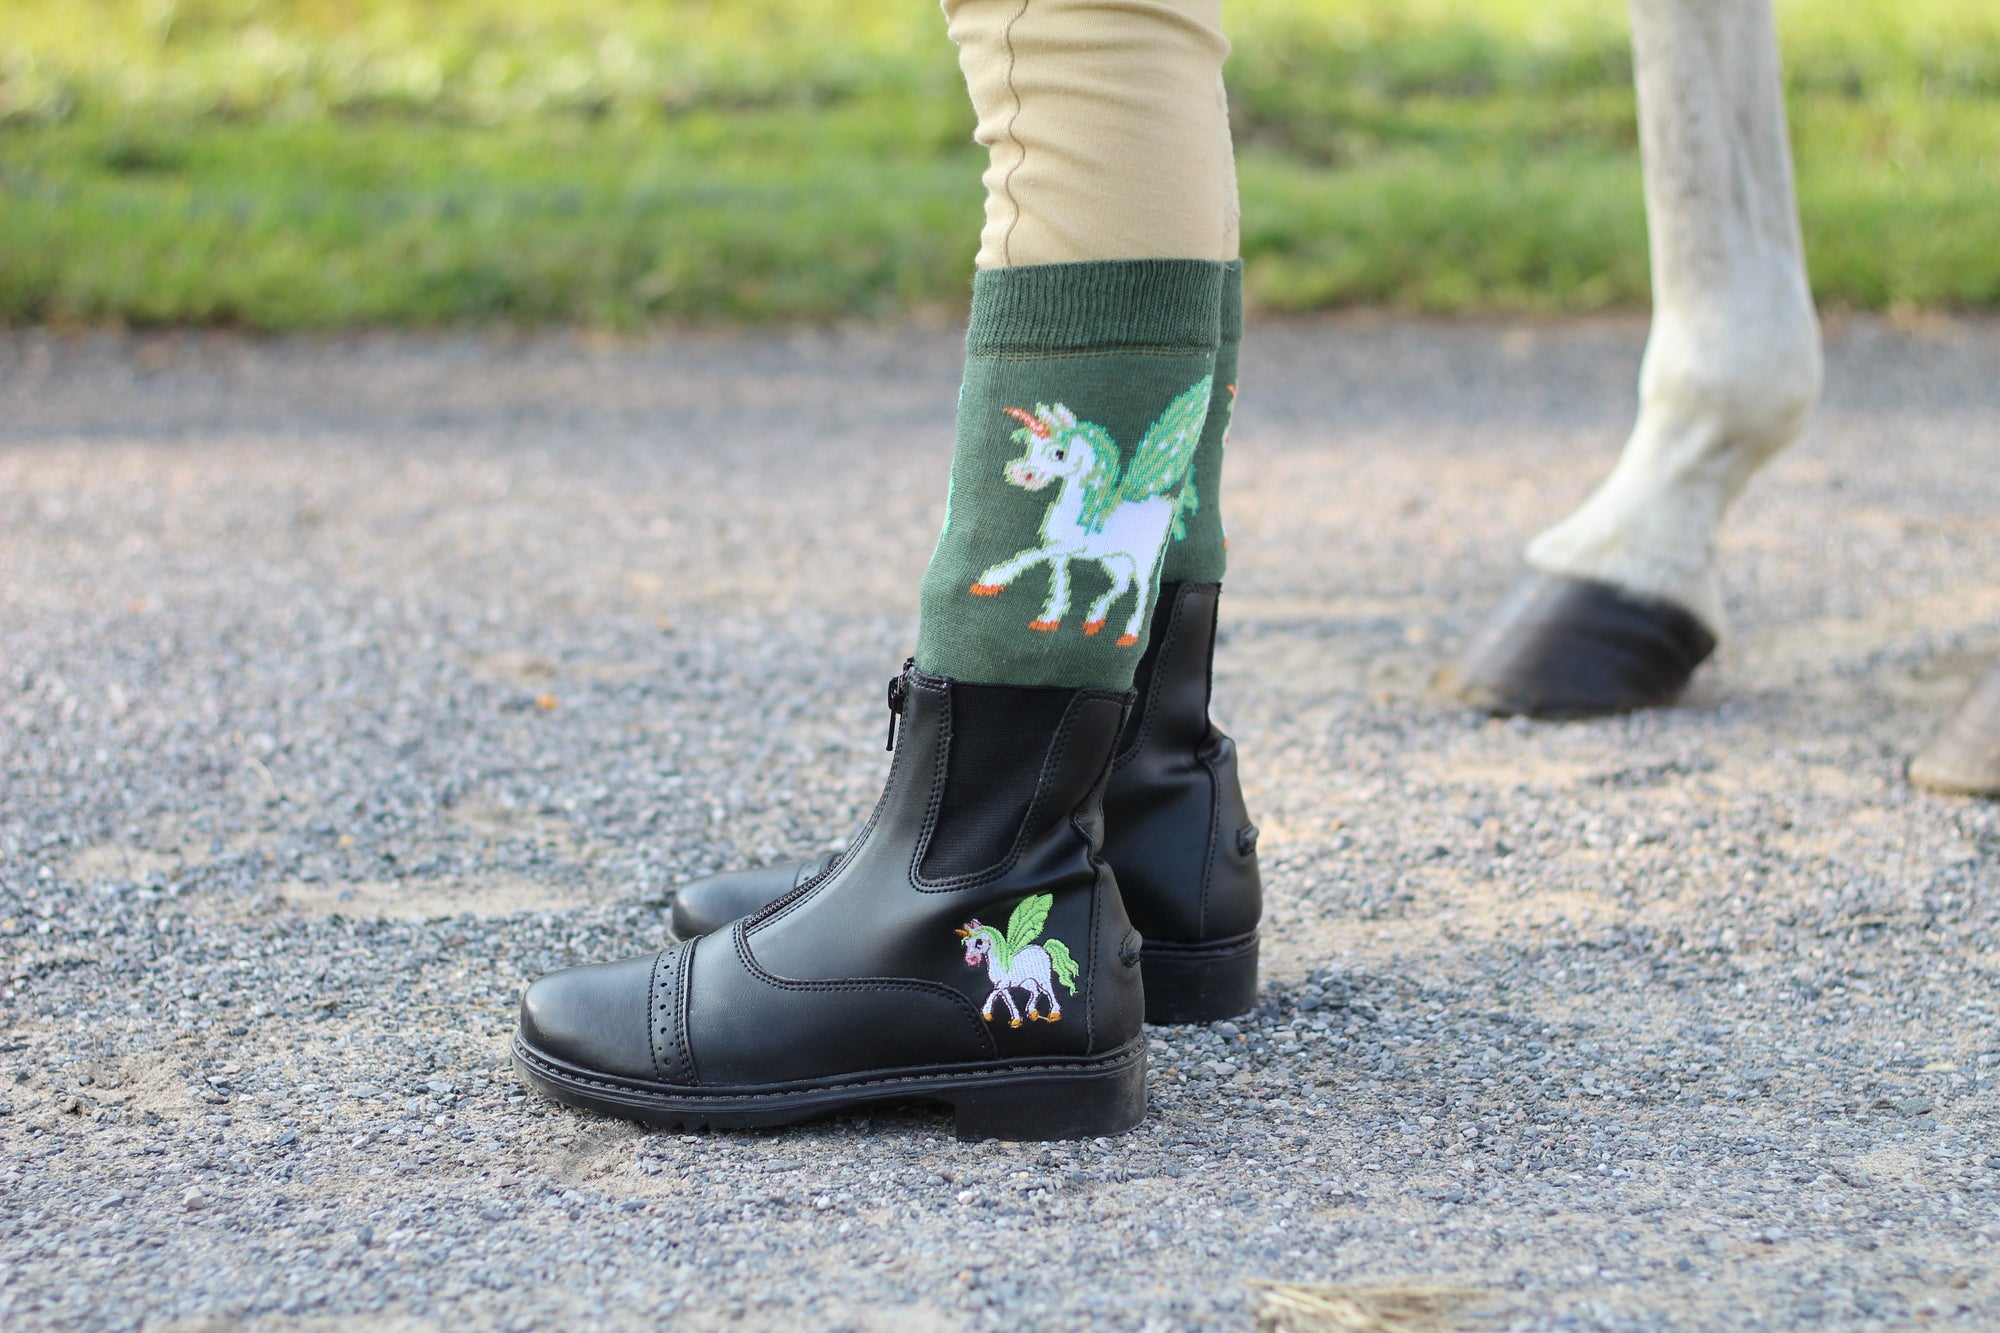 children's unicorn boots